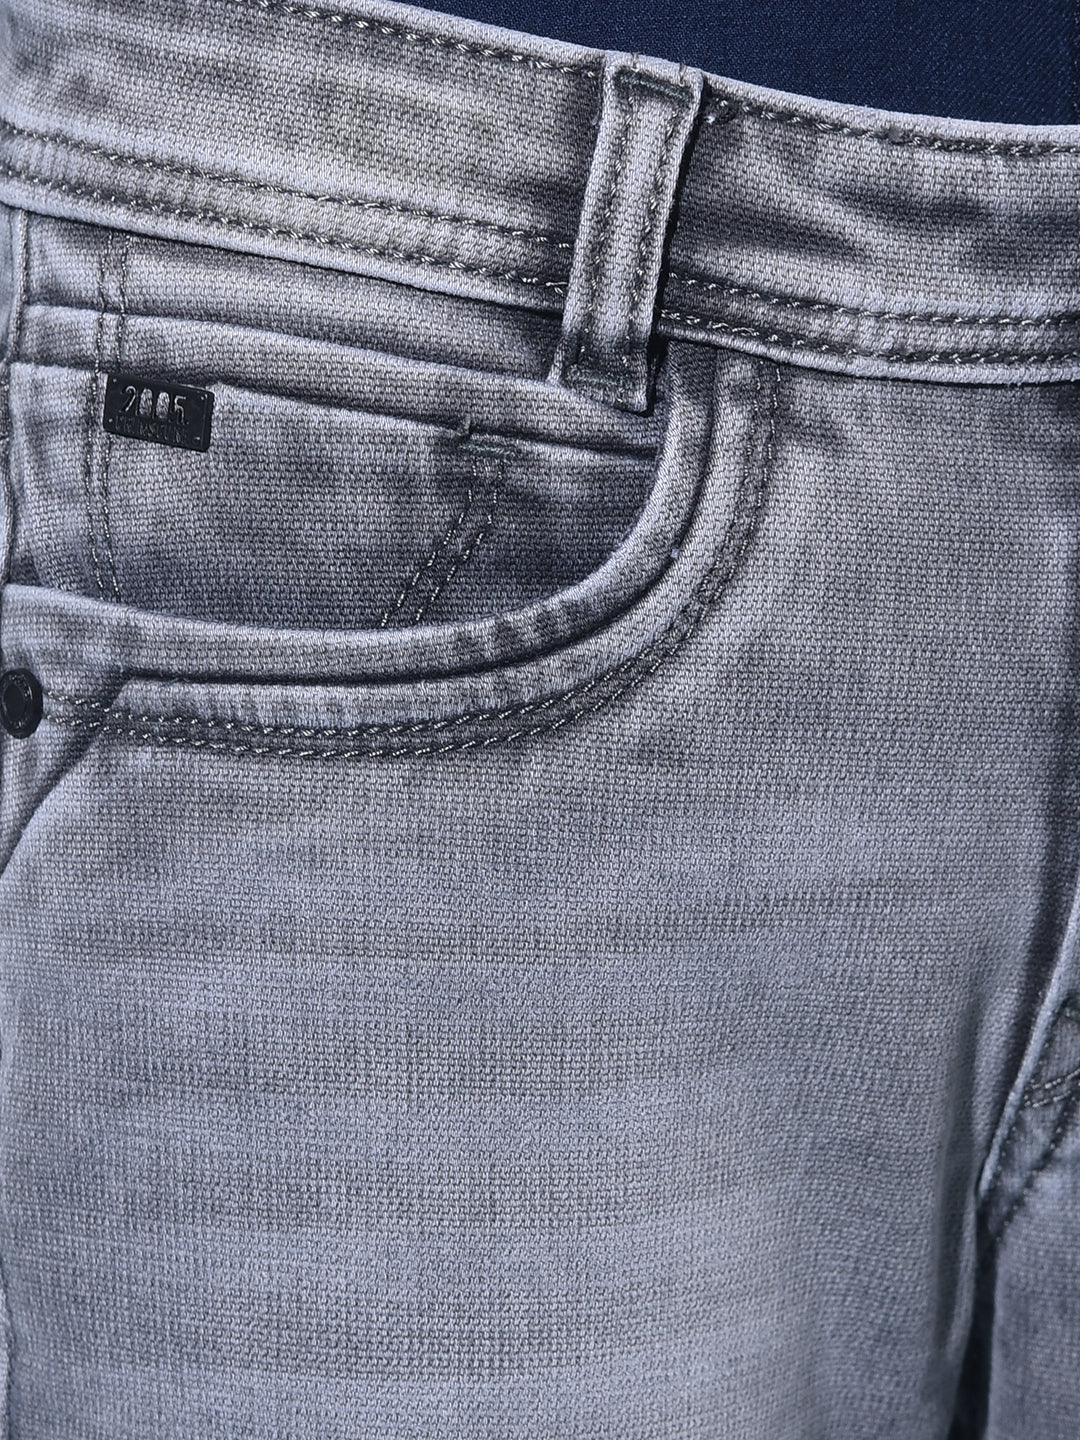 Grey Stretchable Cotton Jeans-Boys Jeans-Crimsoune Club